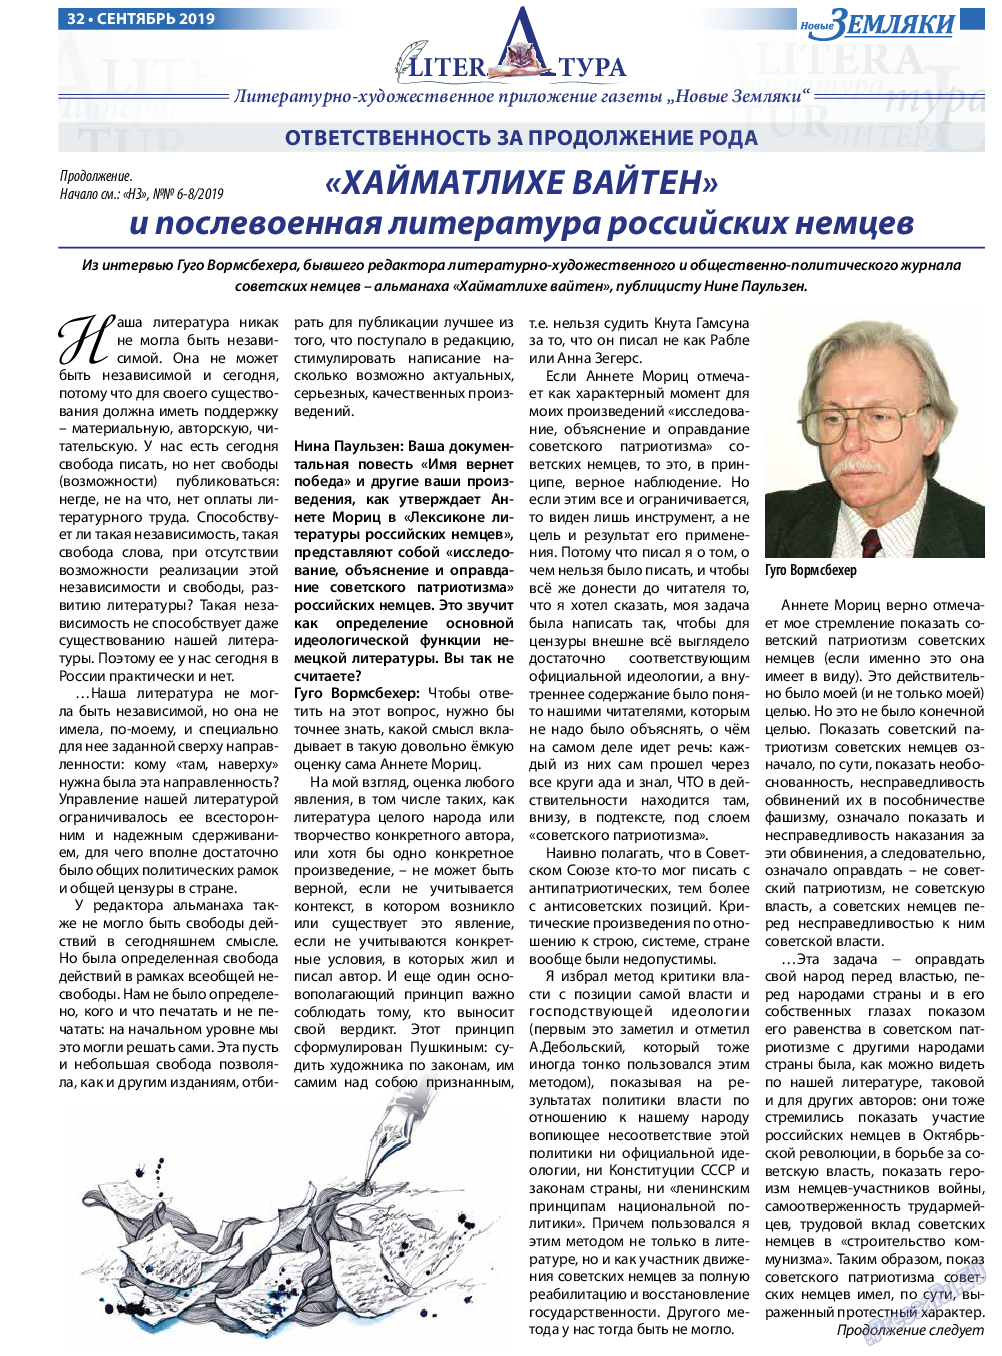 Новые Земляки, газета. 2019 №9 стр.32